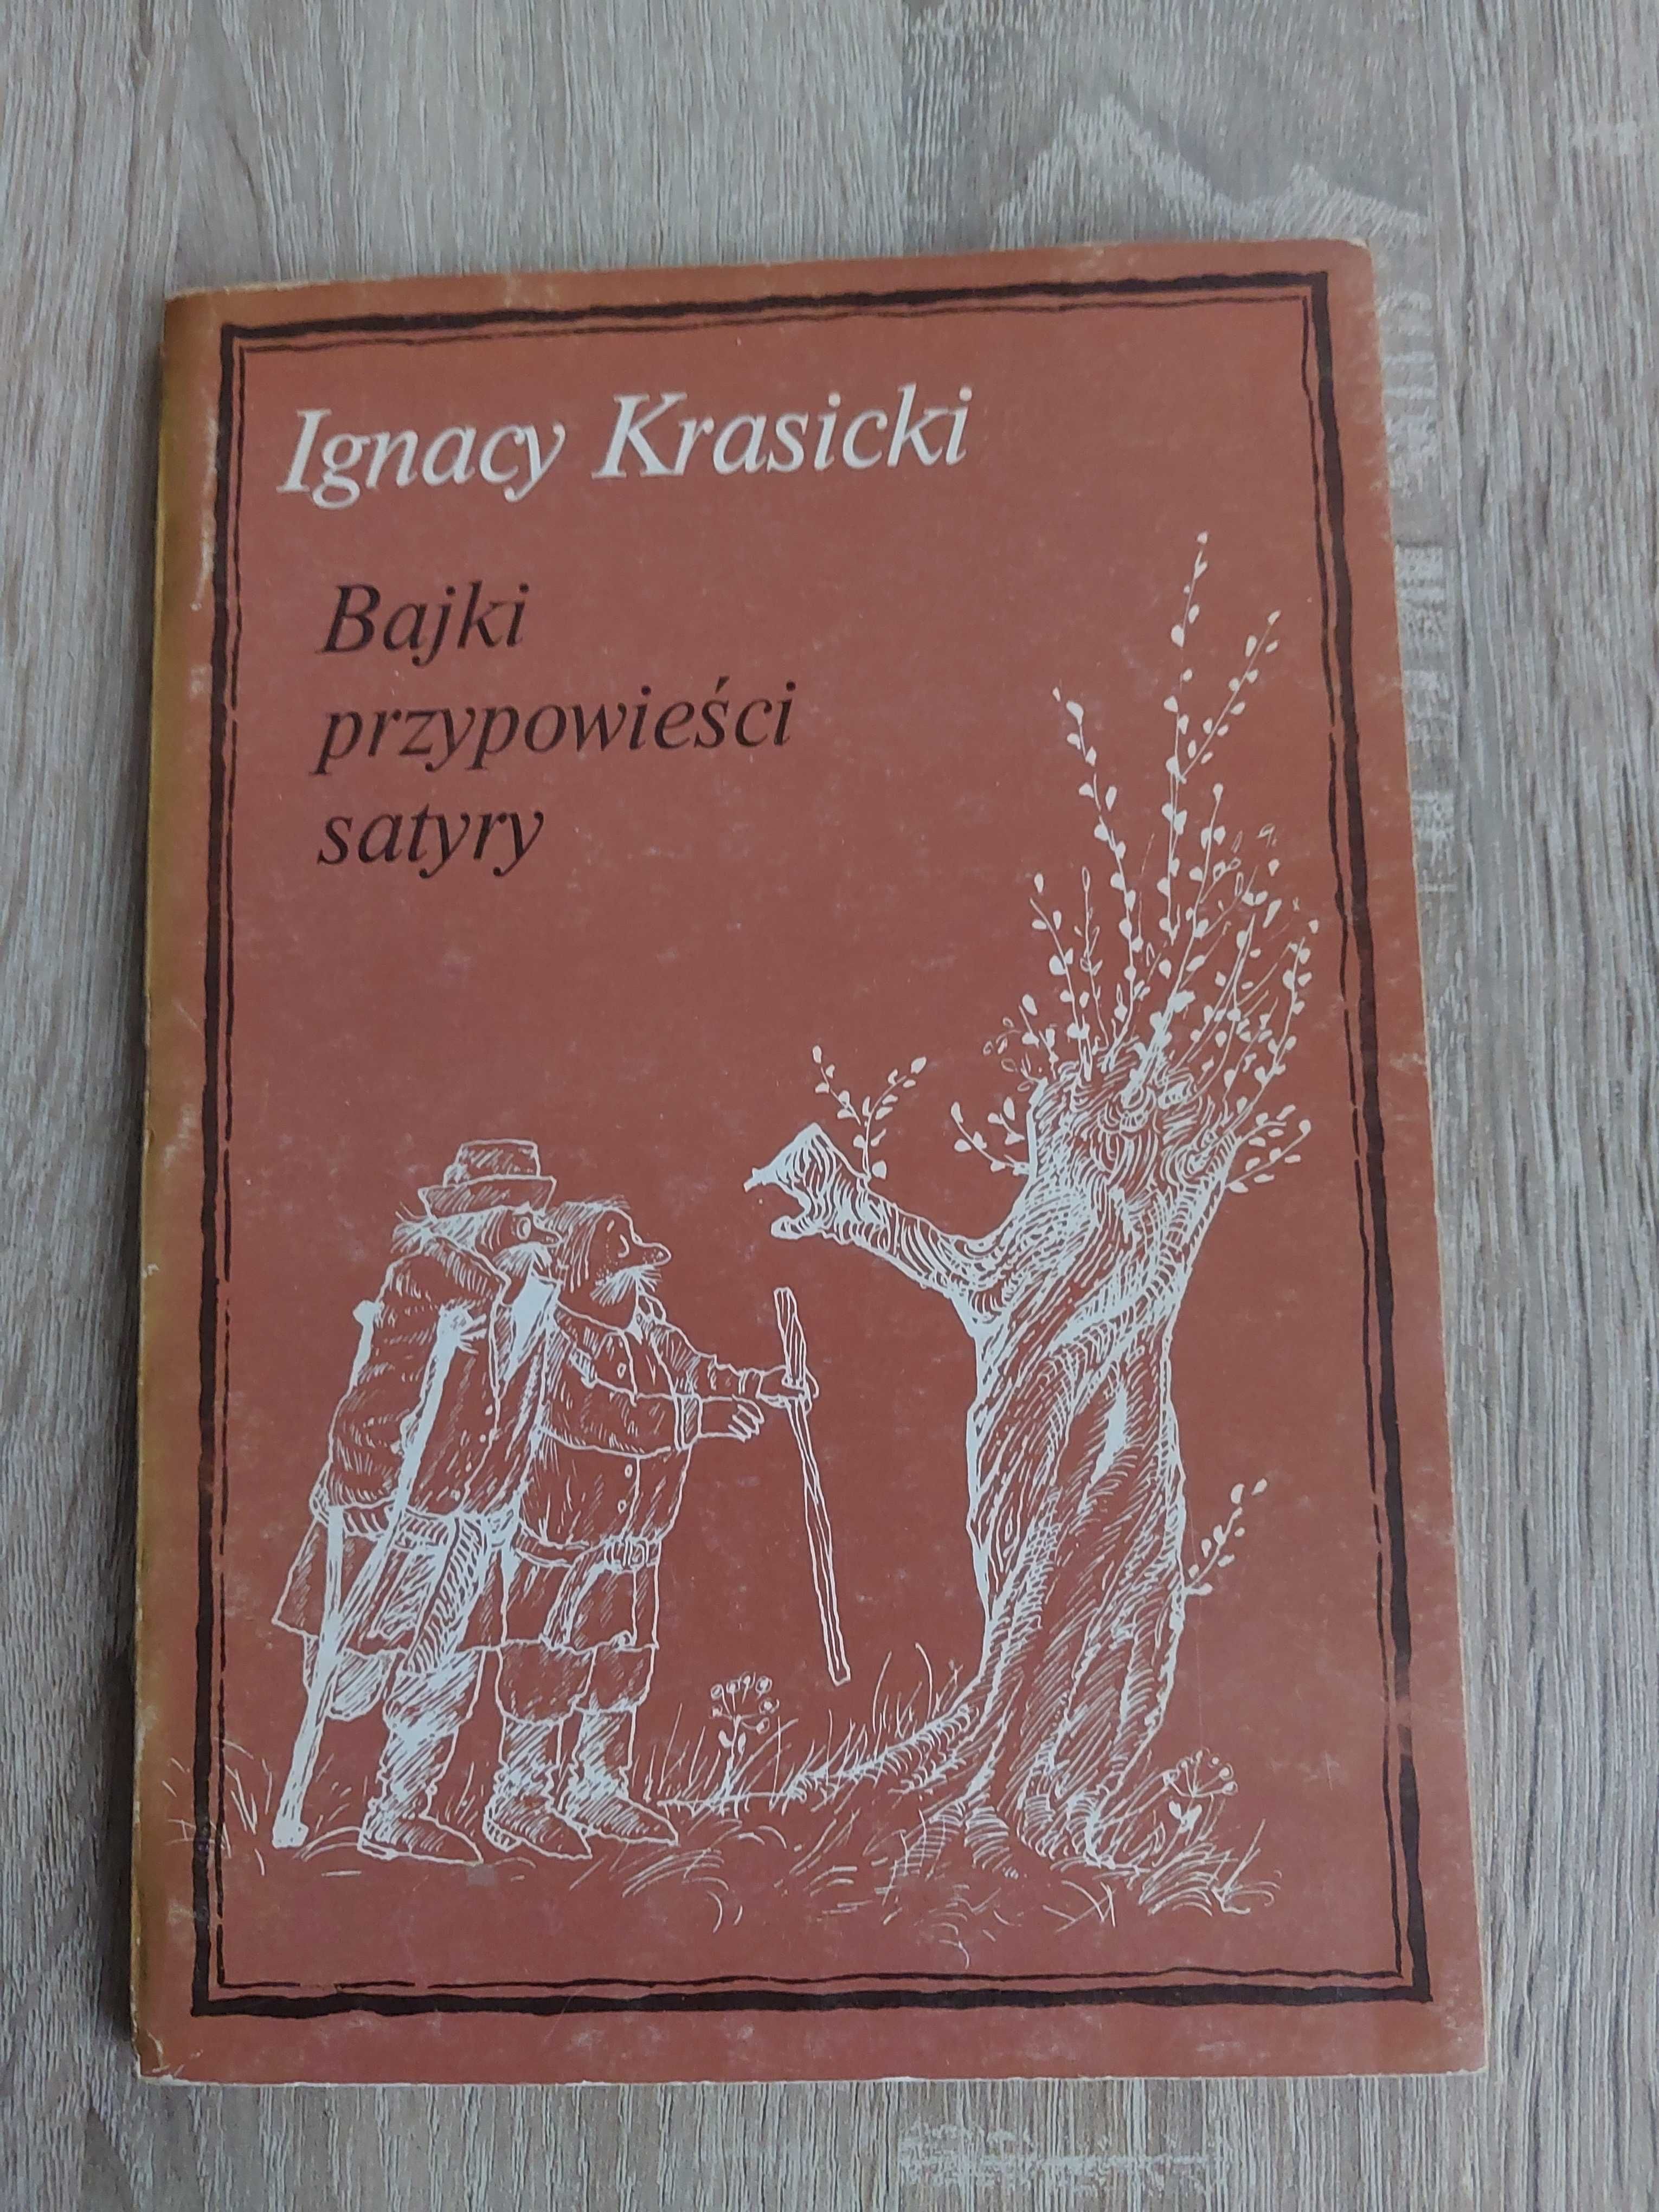 Ignacy Krasicki Bajki,przypowieści, satyry